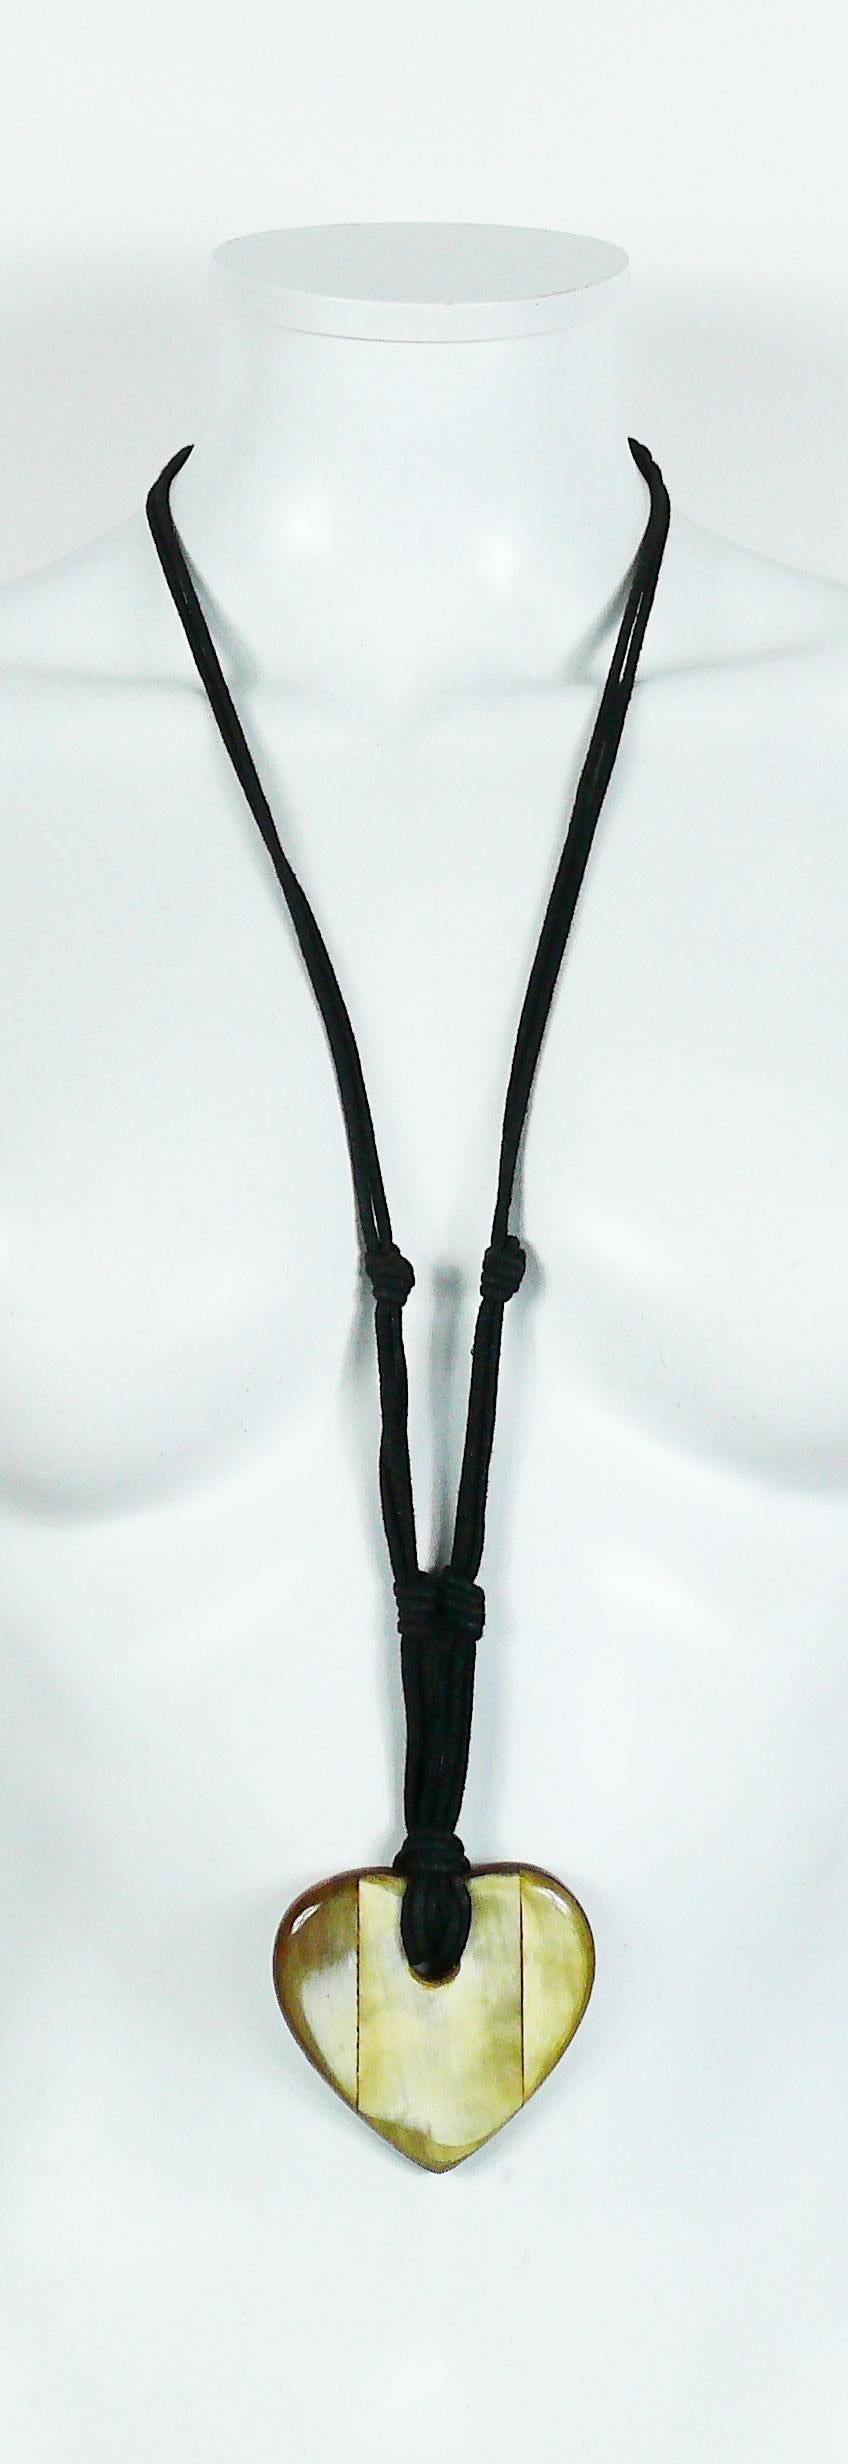 Halskette mit Anhänger von YVES SAINT LAURENT mit einem großen Herz aus Holz und Kunsthorn mit schwarzem Seil.

Gekennzeichnet mit YVES SAINT LAURENT Rive Gauche.

Ungefähre Maße: Länge getragen ca. 40 cm / Herz ca. 6,5 cm x 6,5 cm (2,56 Zoll x 2,56